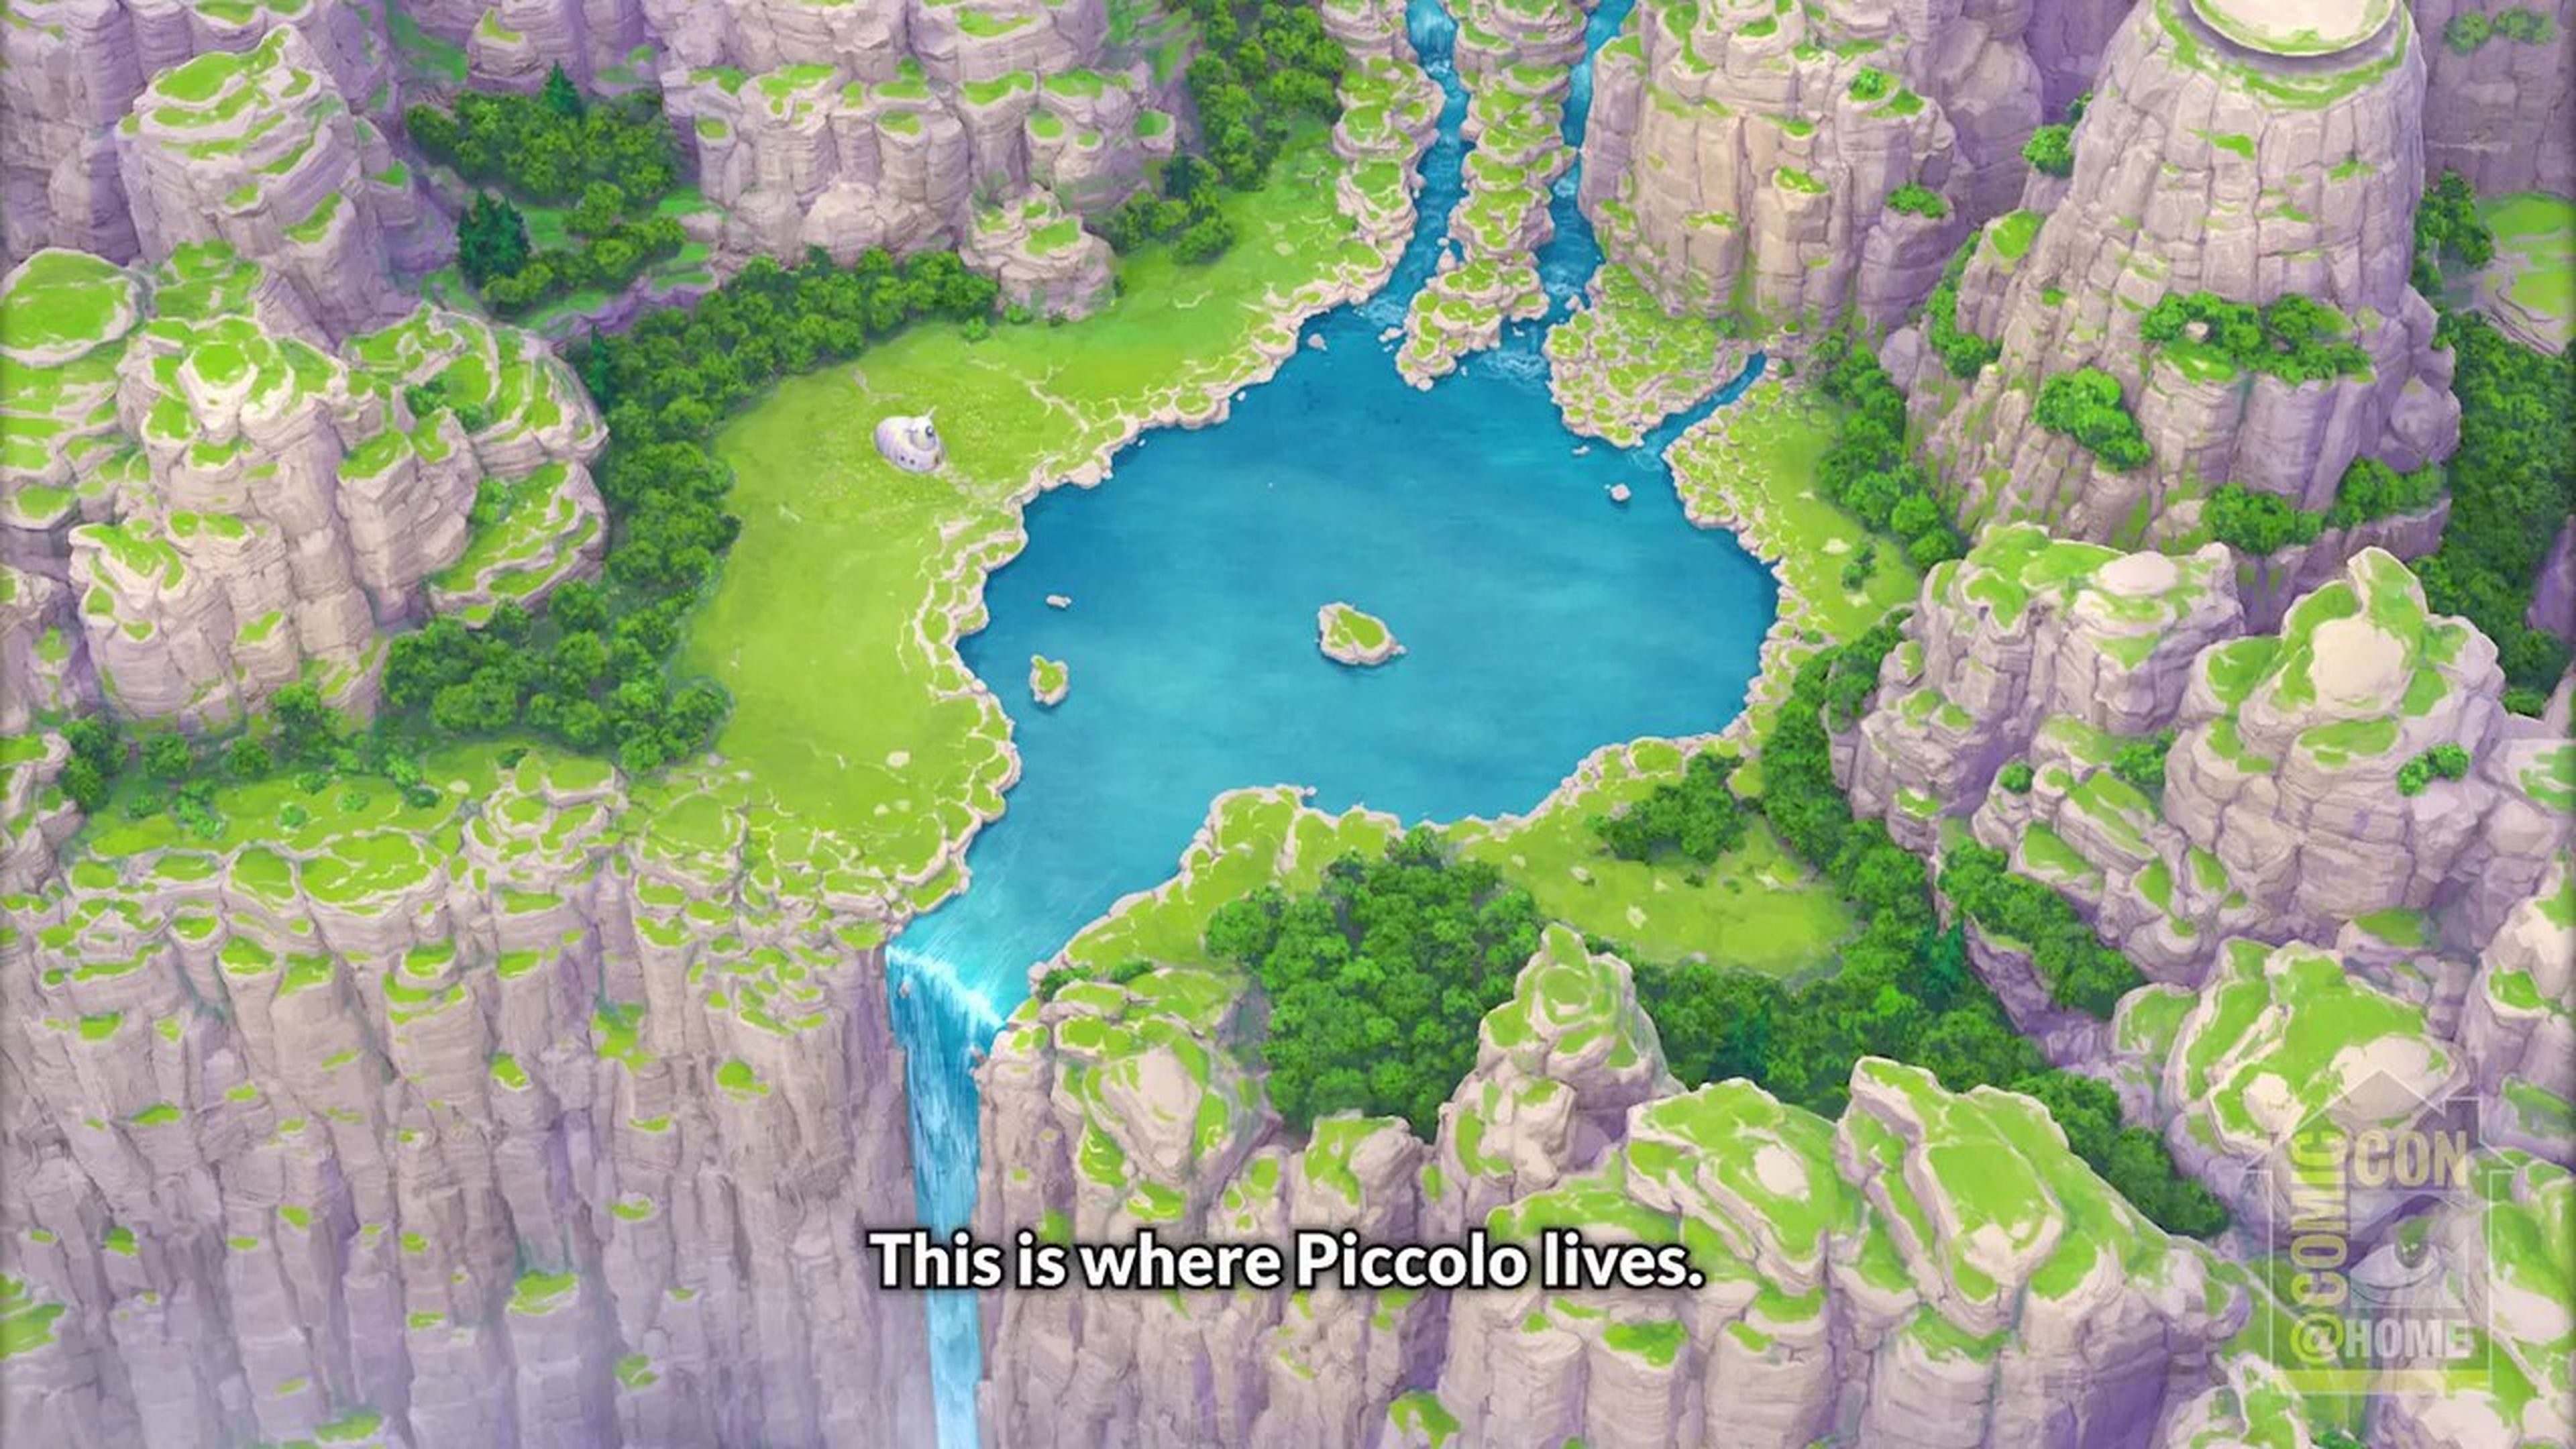 Dragon Ball Super: Super Hero - La película desvelará por primera vez la casa de Piccolo